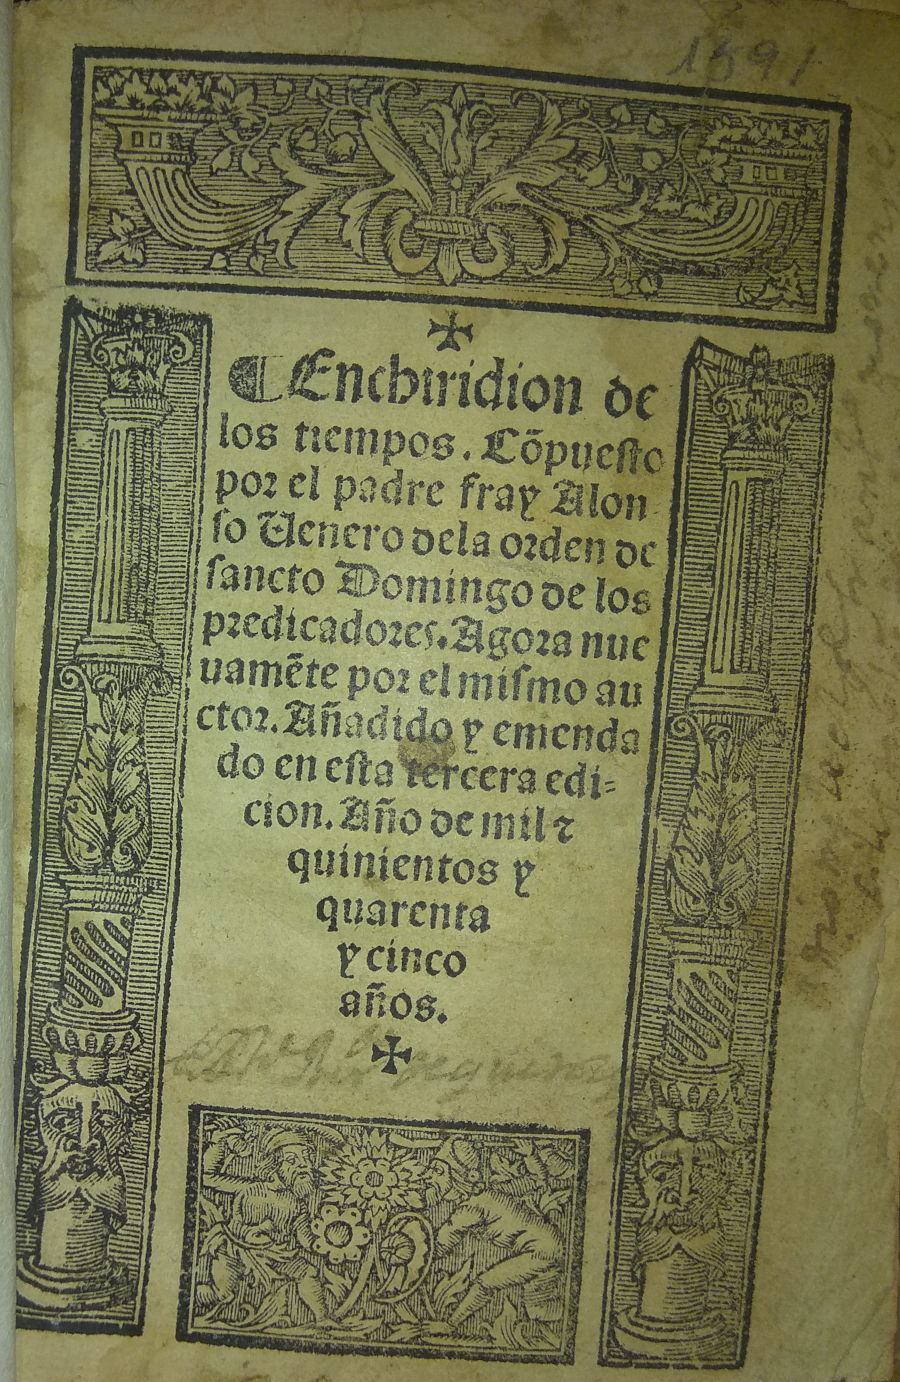 Enchiridion de los tiempos, 1545